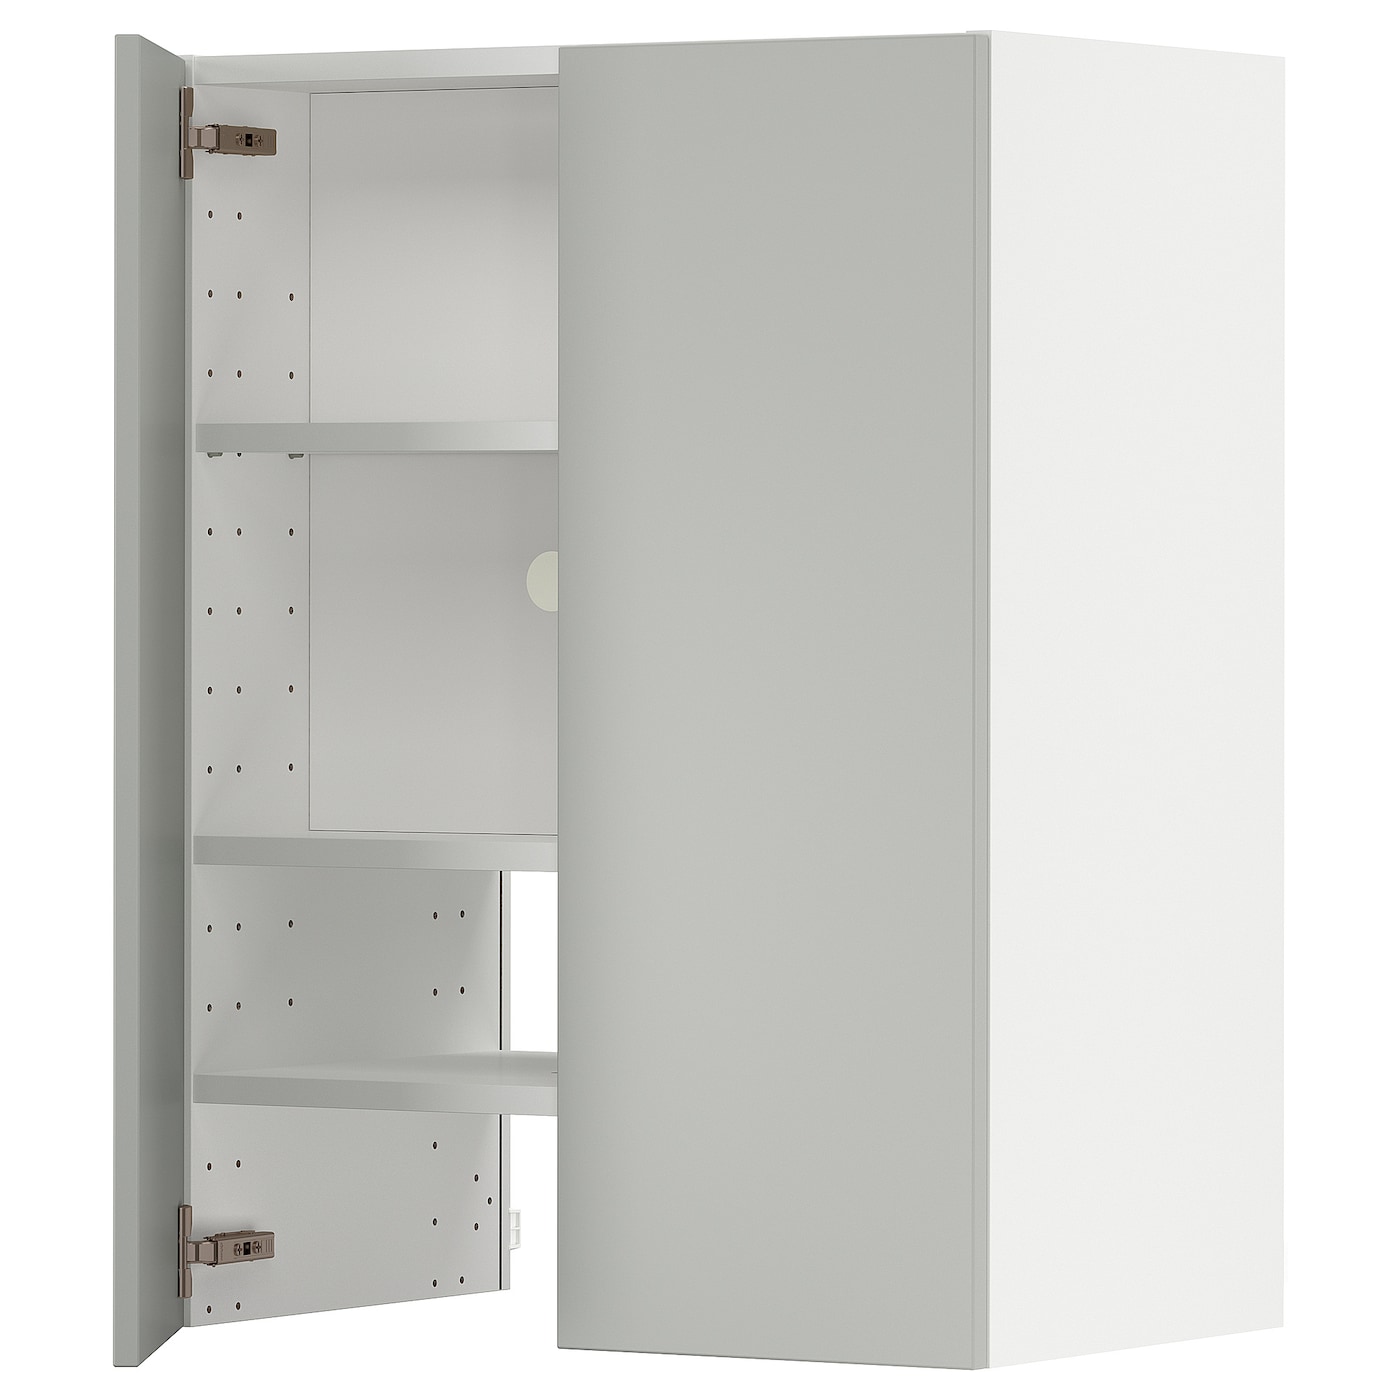 Шкаф - METOD IKEA/ МЕТОД ИКЕА,  80х60 см, белый/серый